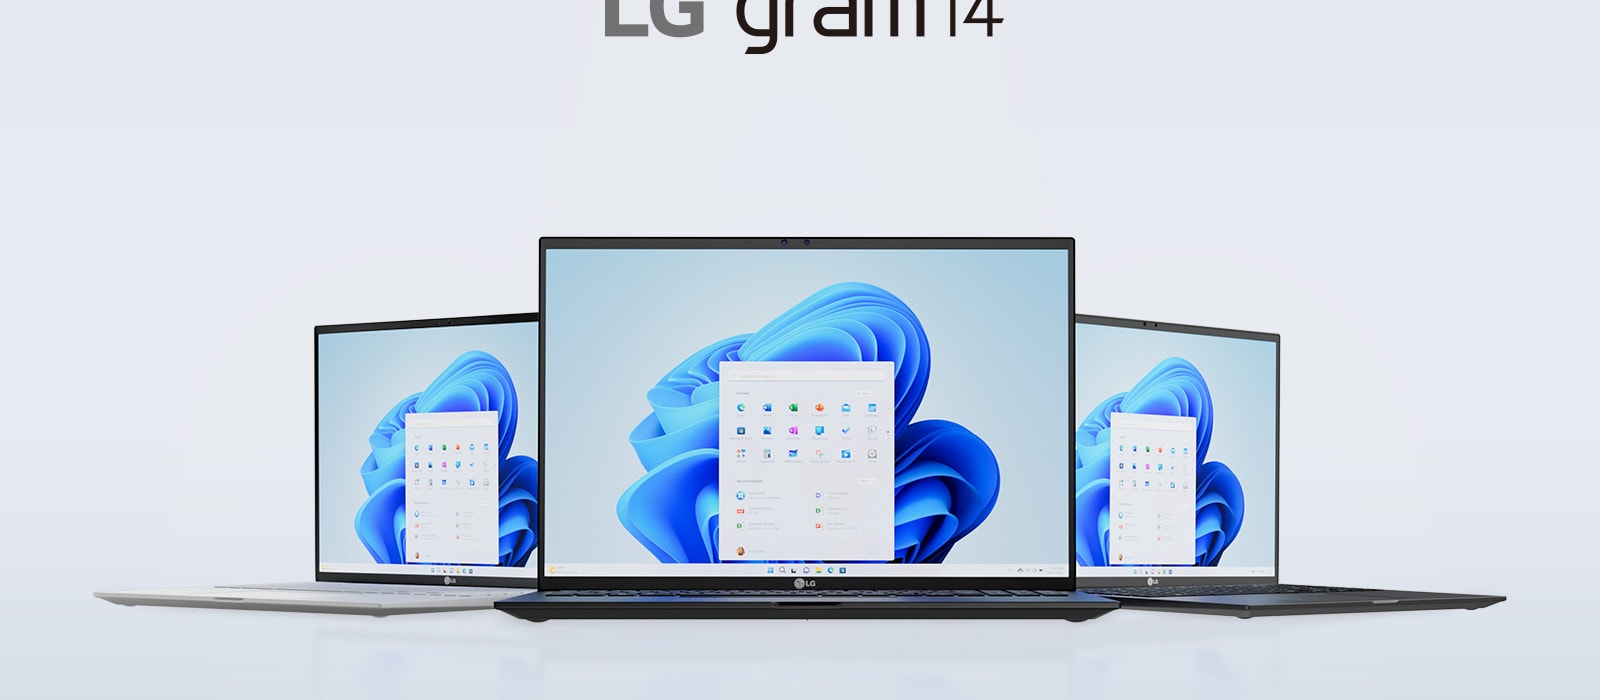 Start Light with LG gram.